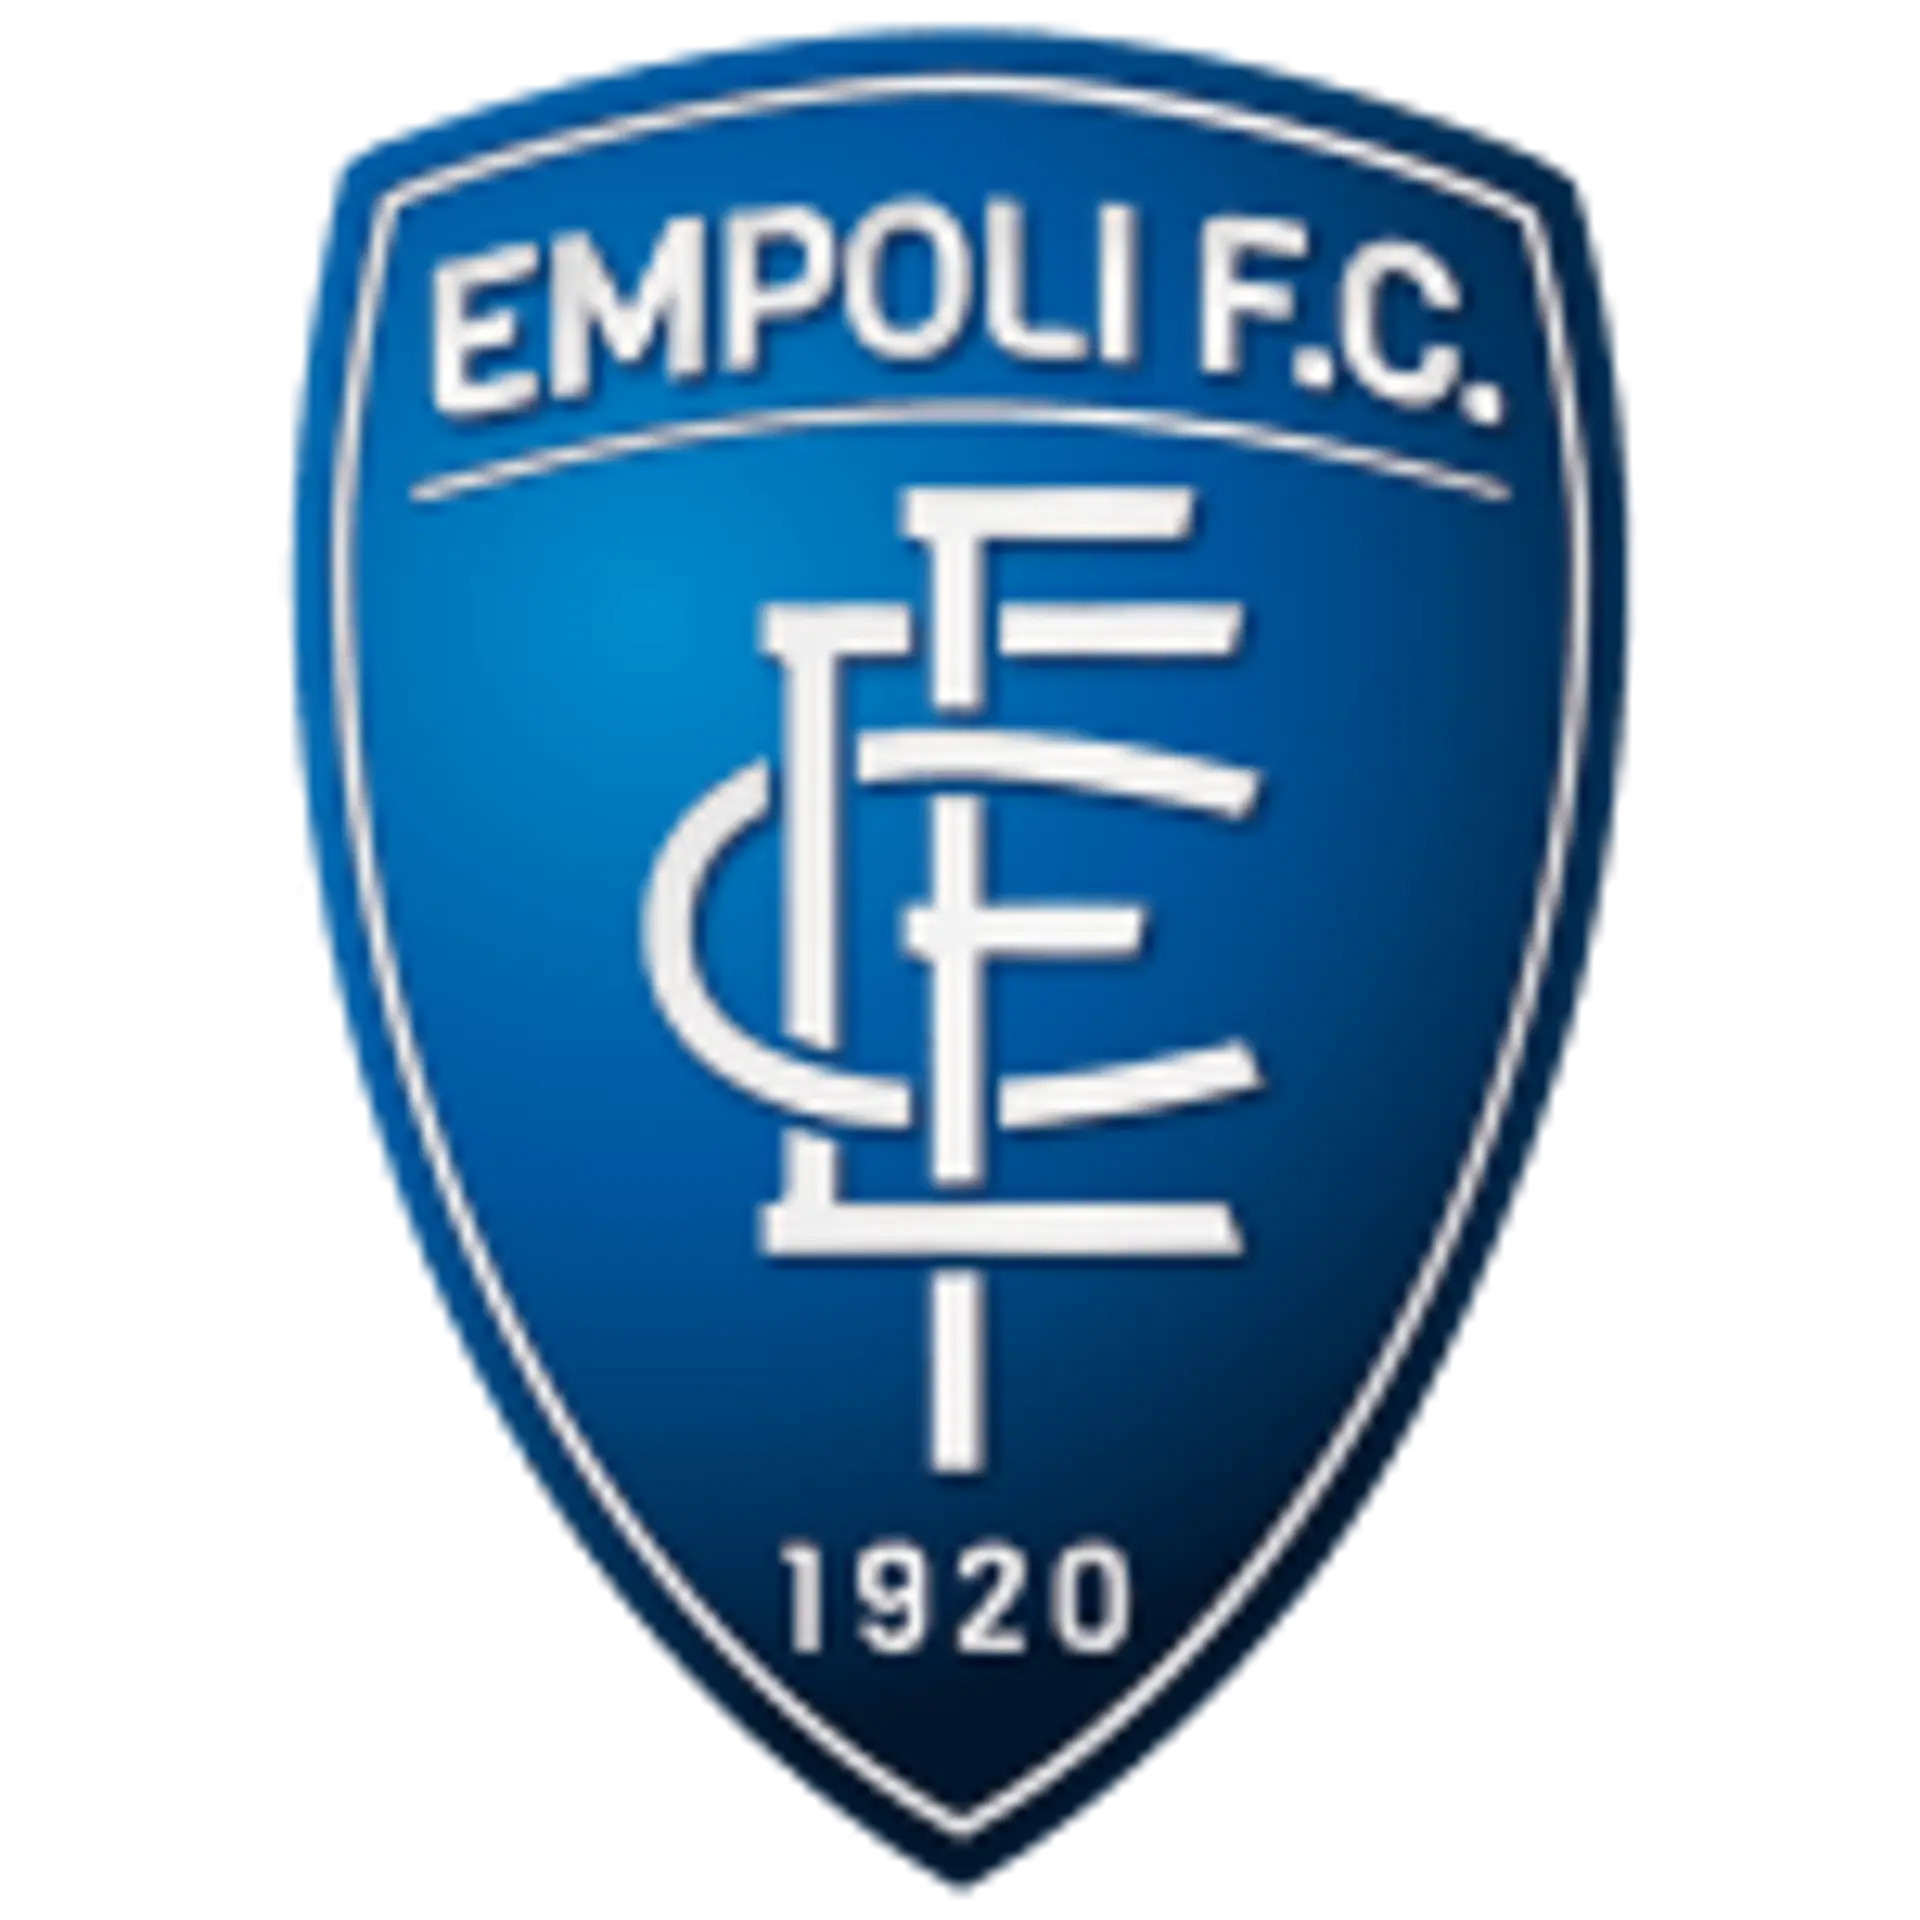 ▶️ Genoa vs Empoli Live Stream & on TV, Prediction, H2H